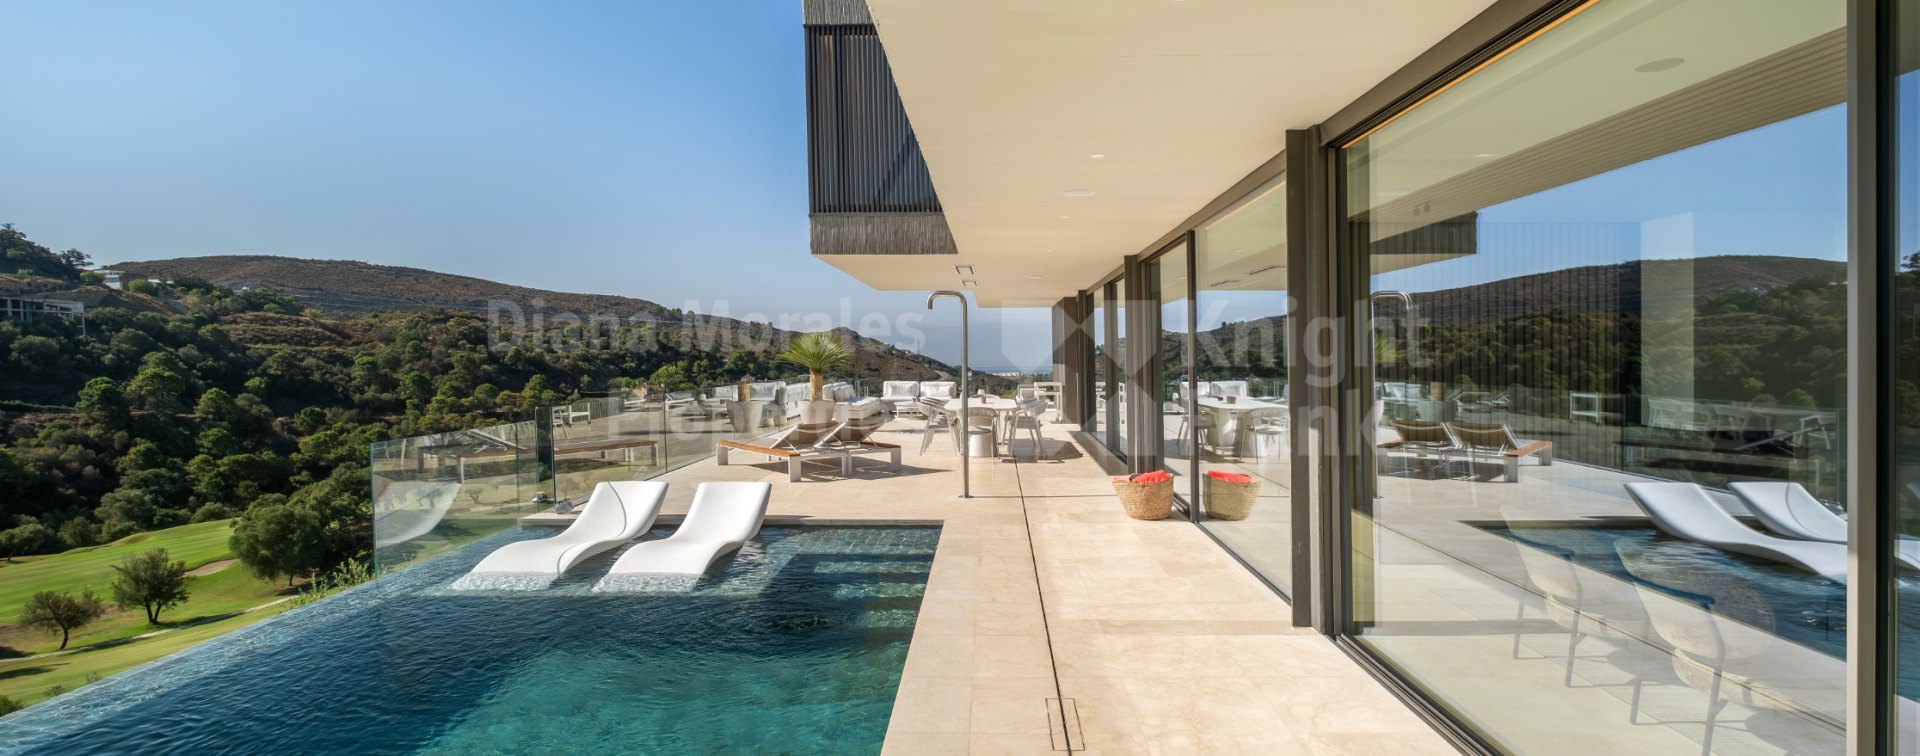 Marbella Club Golf Resort, Villa design dans une communauté fermée avec sécurité